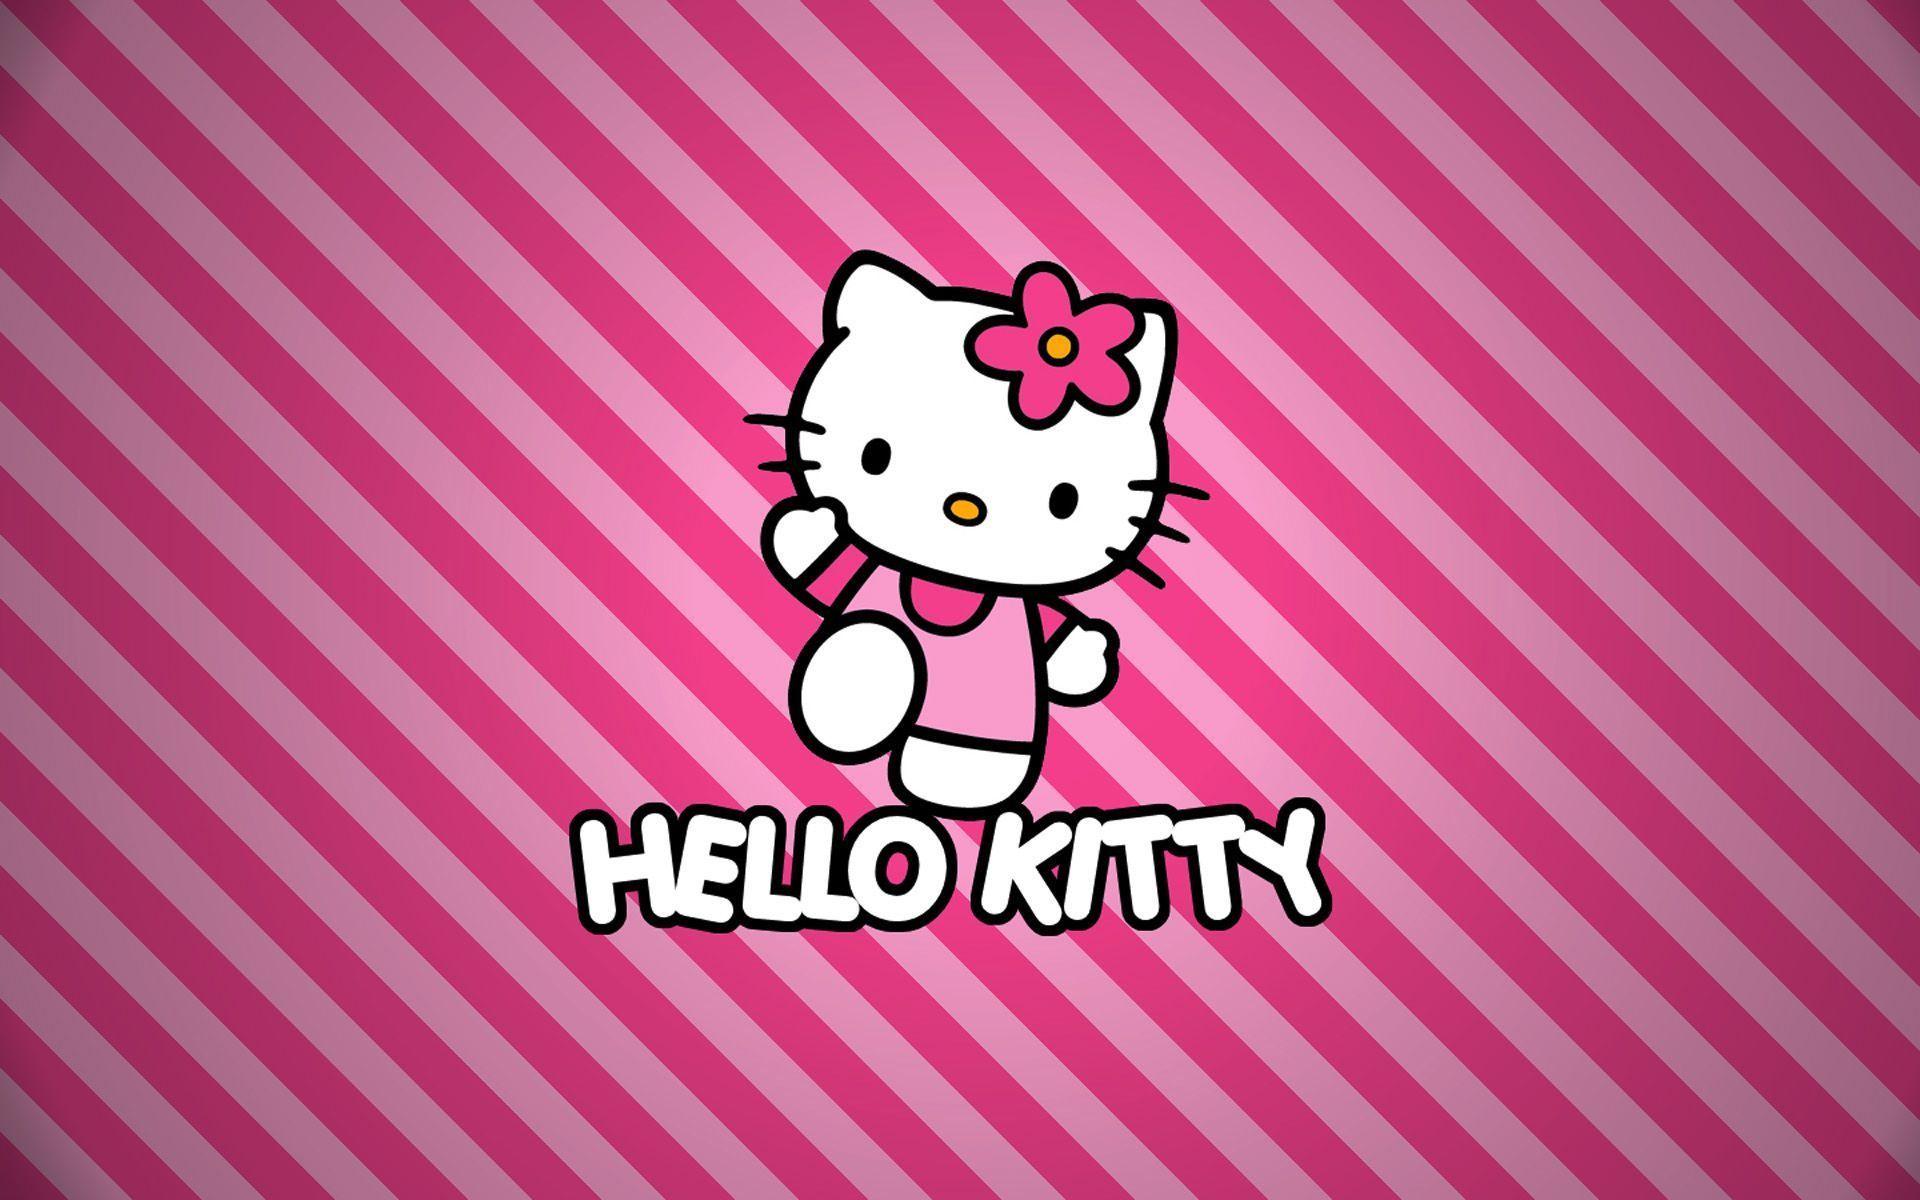 HD Hello Kitty Wallpapers For Desktop  PixelsTalkNet